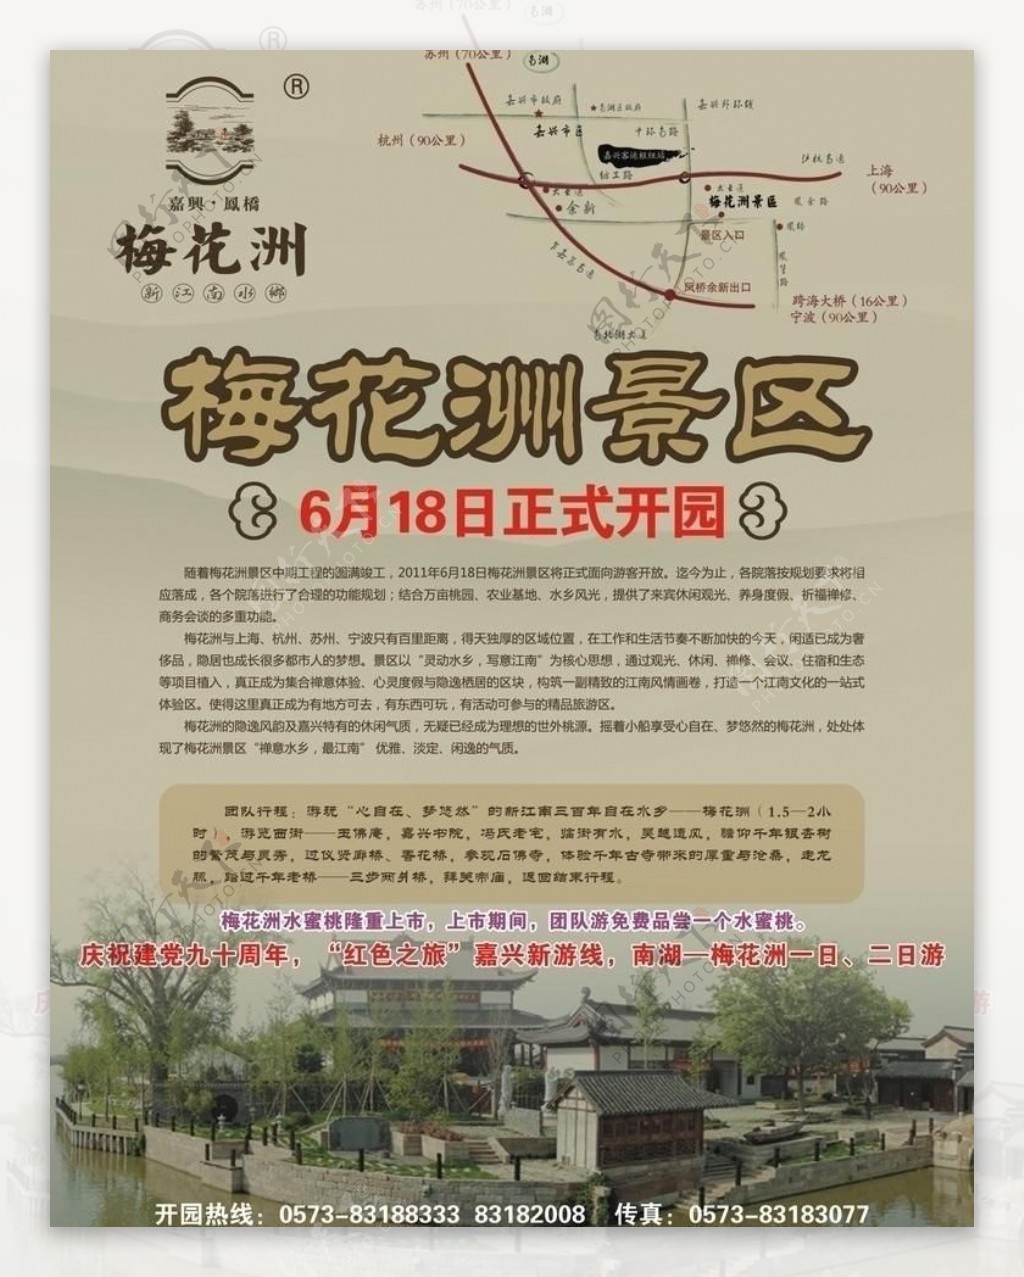 梅花洲旅行社广告宣传页图片